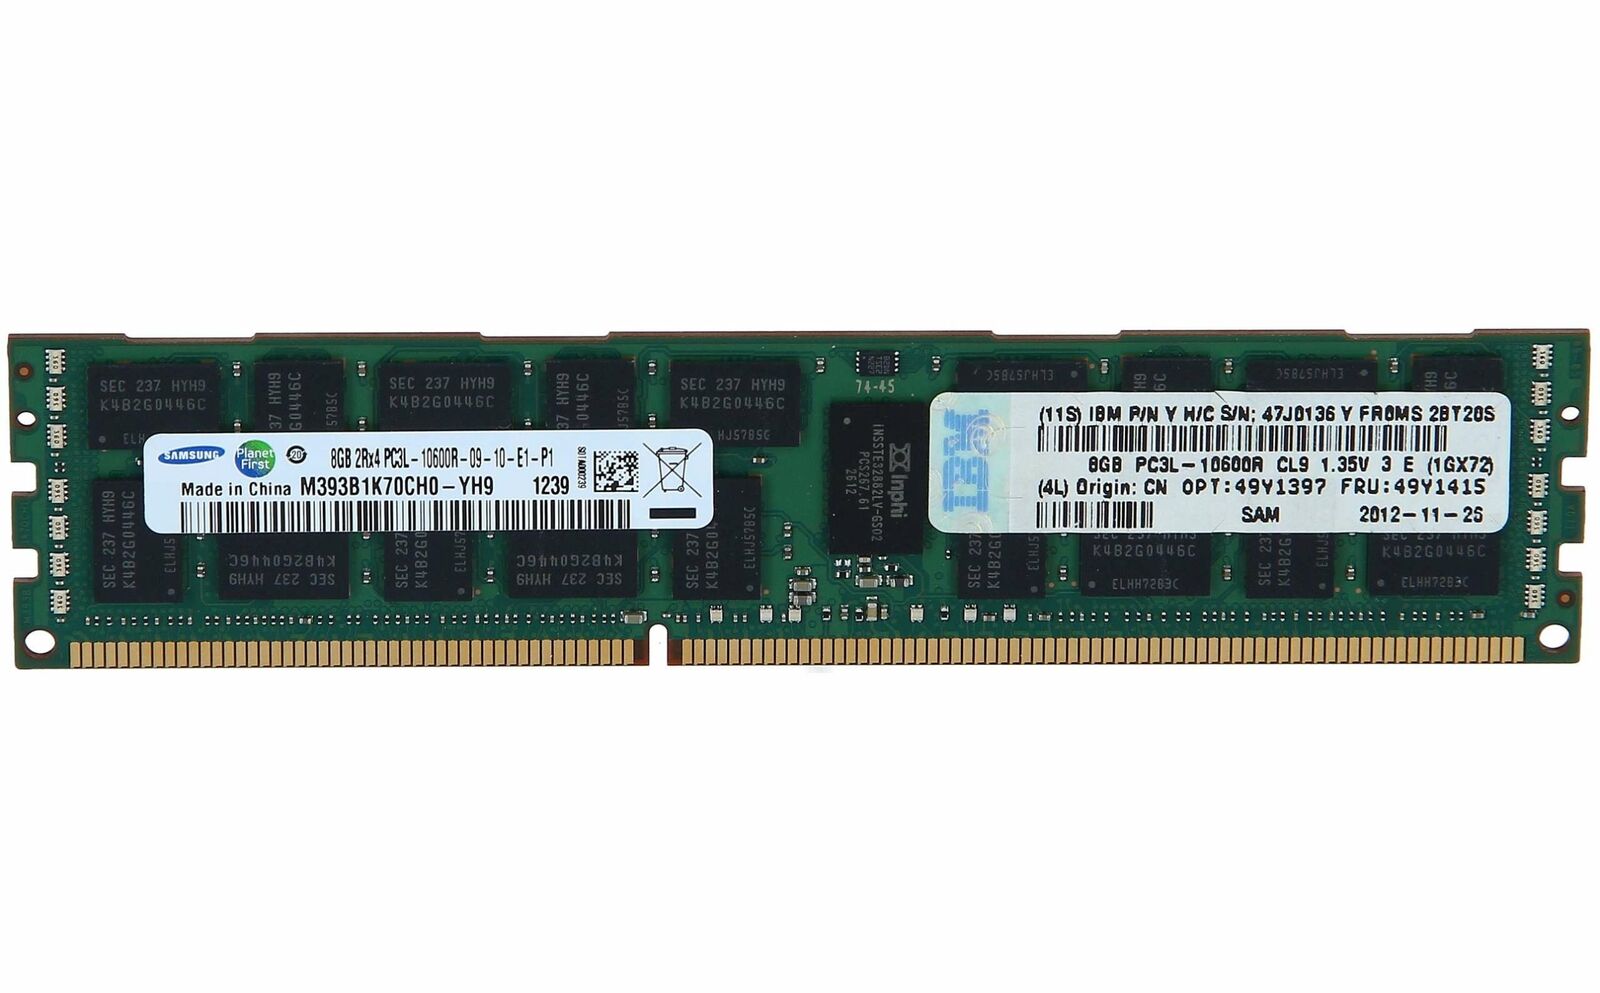 49Y1397 IBM 8GB PC3-10600 DDR3-1333MHz ECC DIMM Memory Module 49Y1415 47J0136